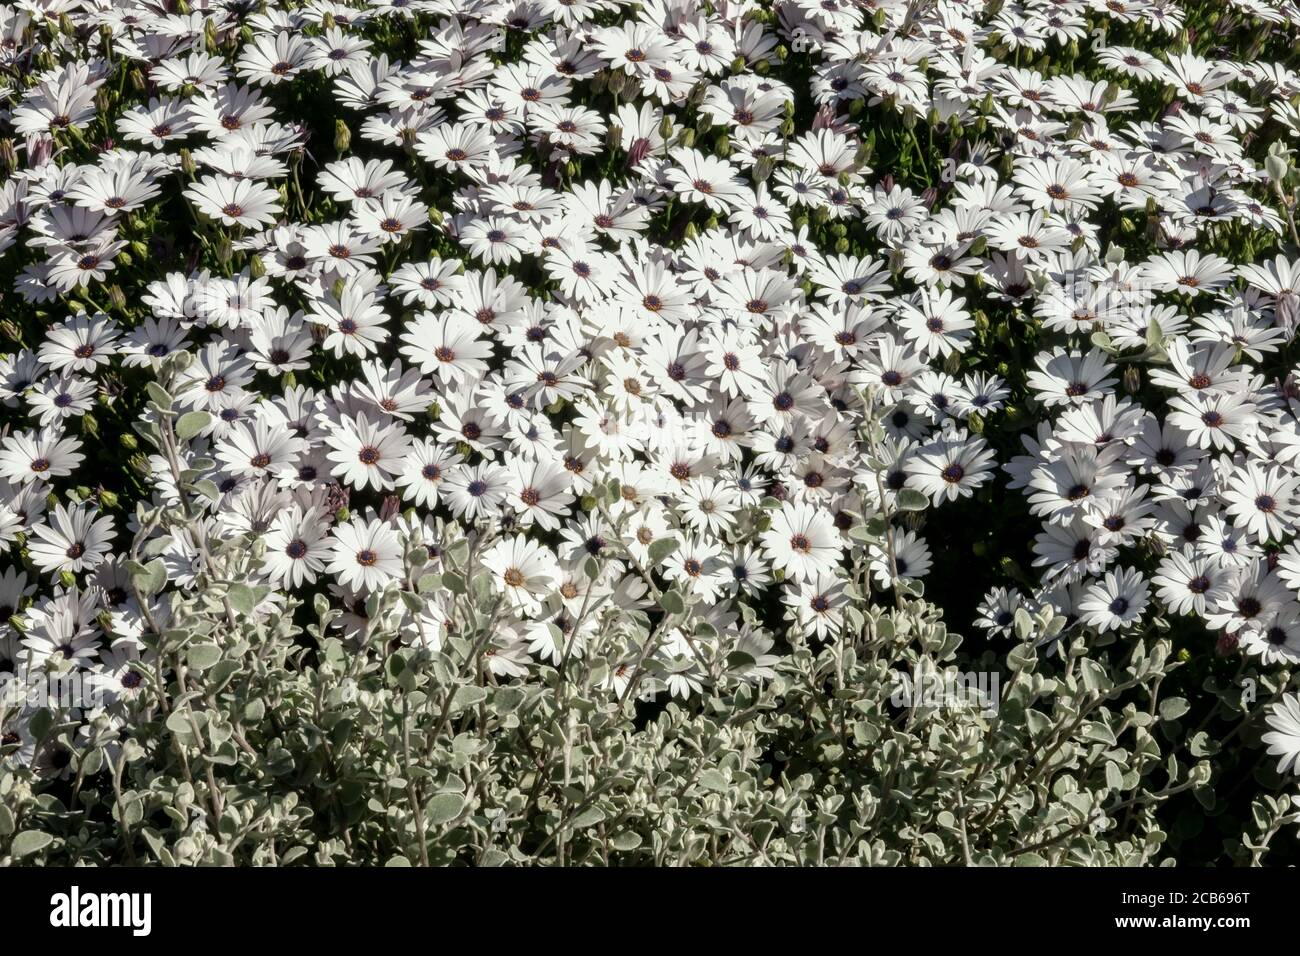 White African daisy Arctotis acaulis white hybrids Osteospermum Stock Photo